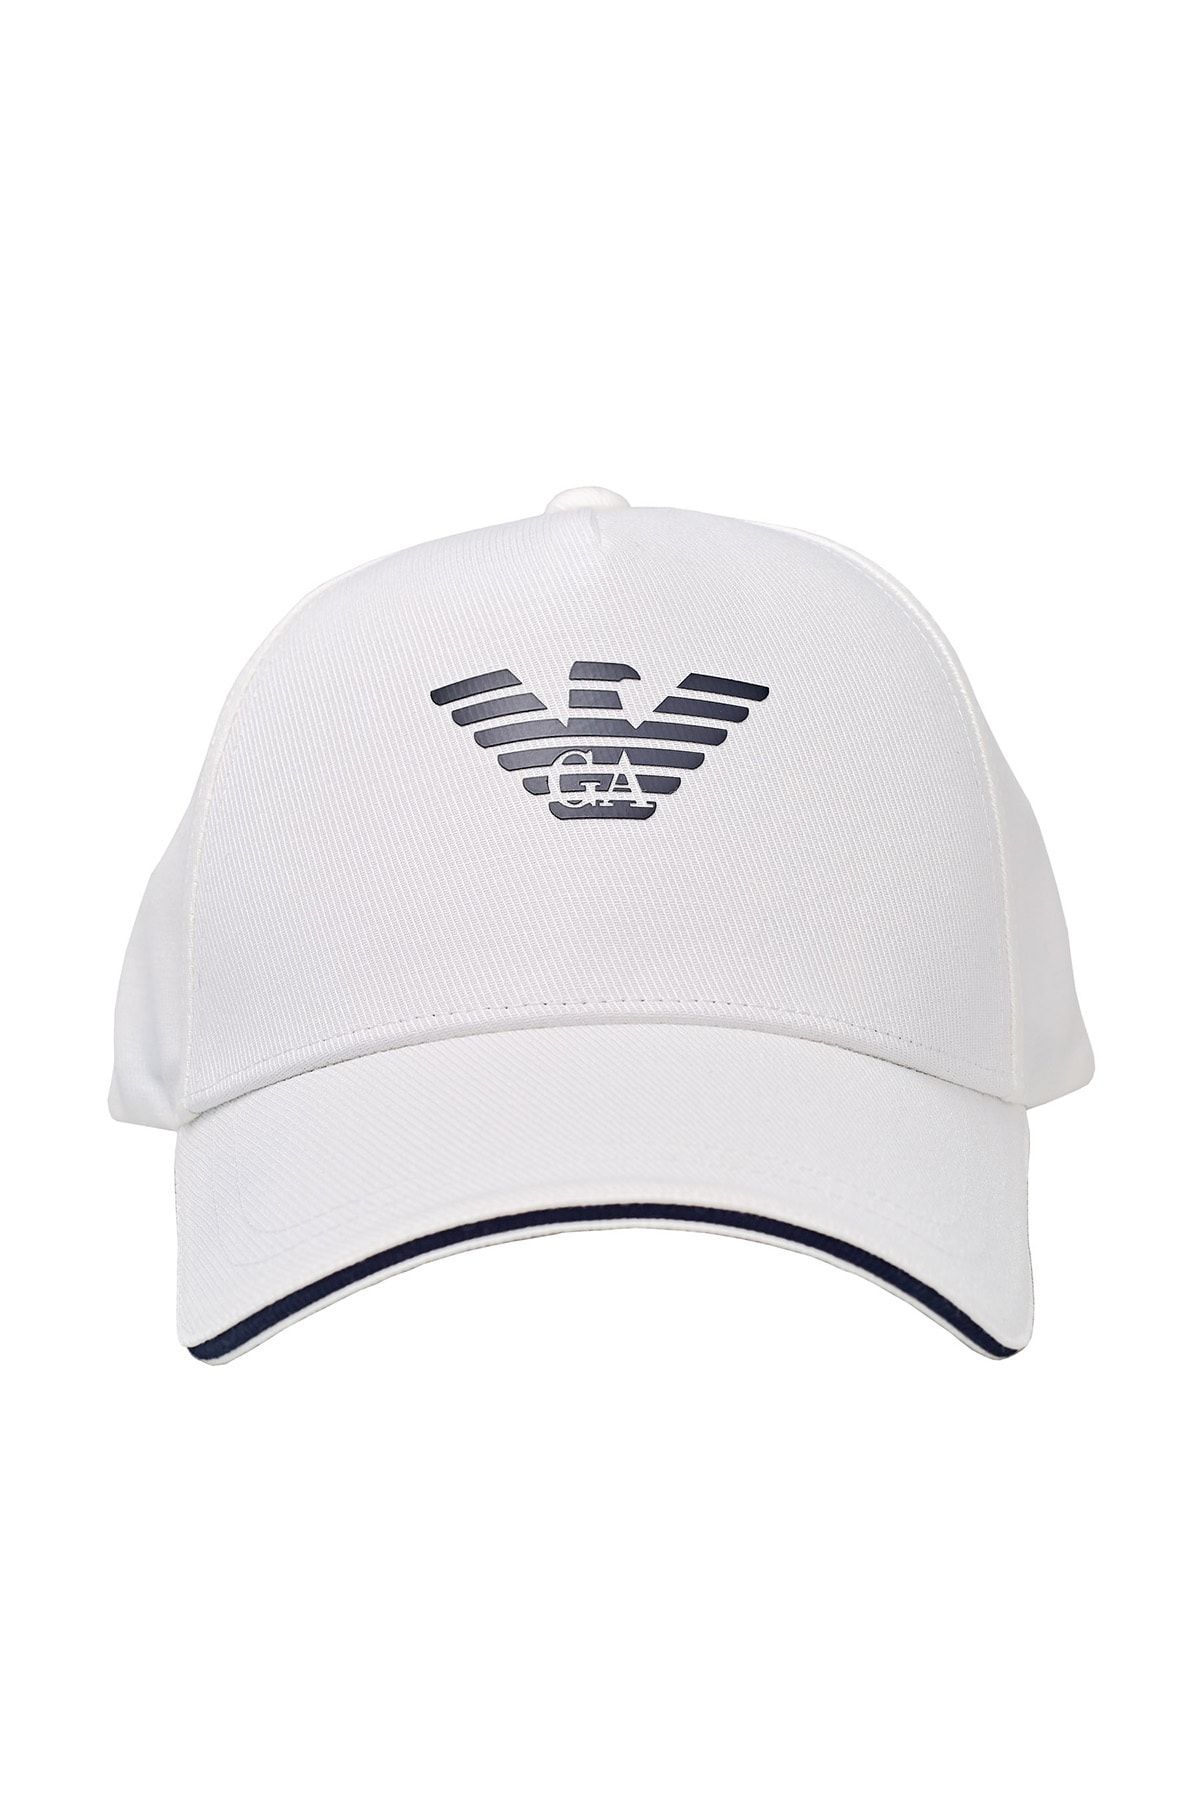 Emporio Armani Logo Baskılı % 100 Pamuk Şapka Erkek Şapka 627920 Cc990 41510